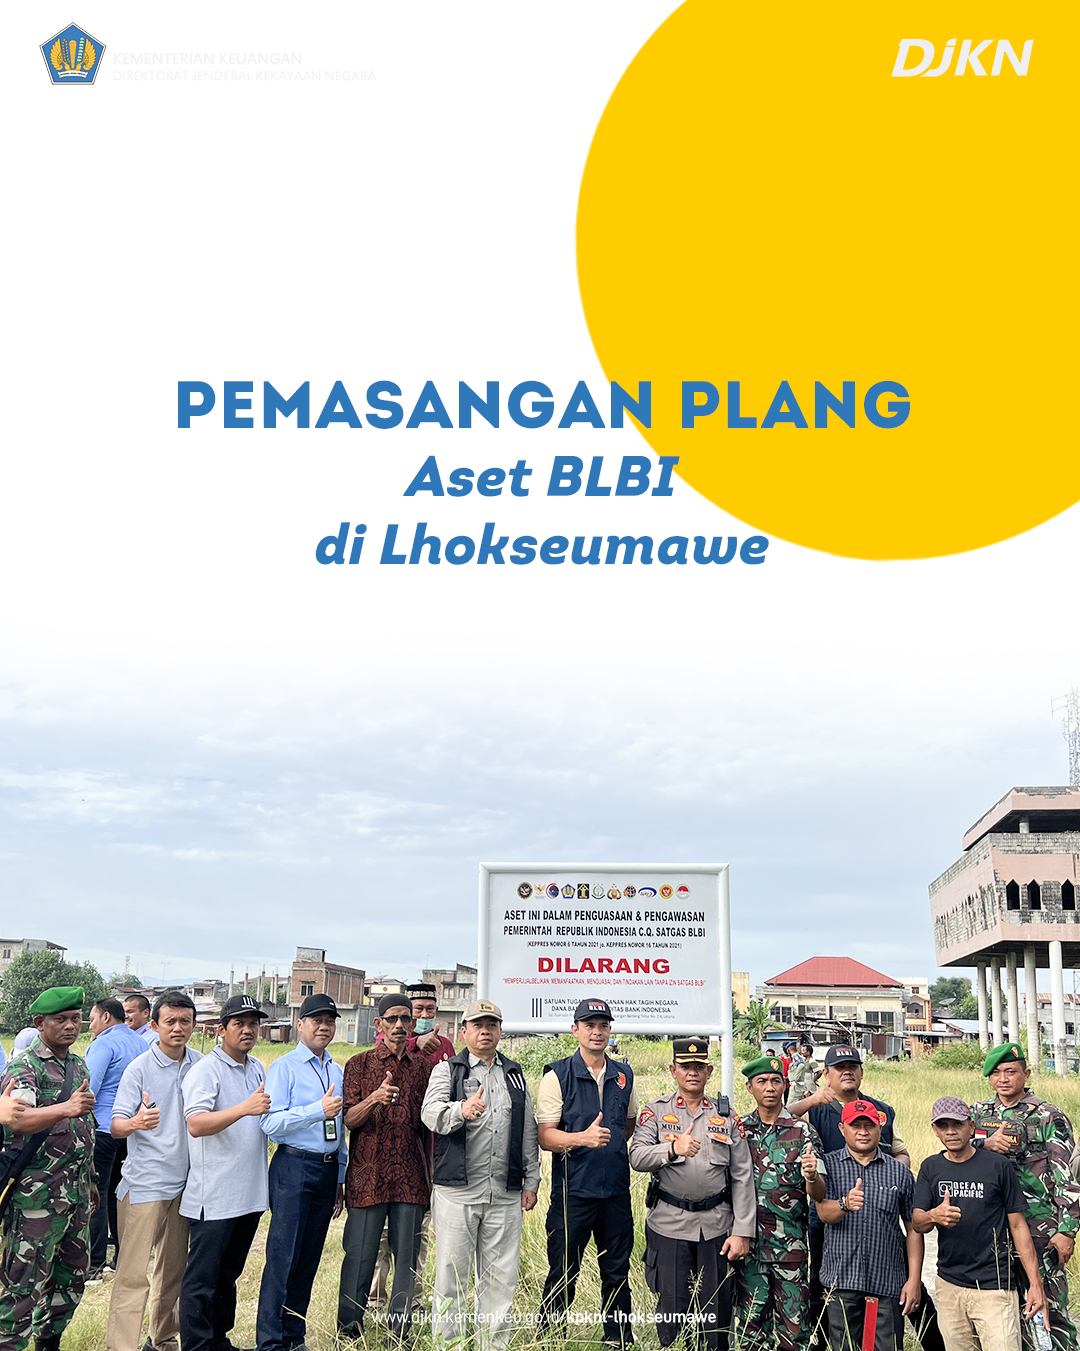 Sinergi DJKN dalam Pemasangan Plang Aset BLBI di Lhokseumawe